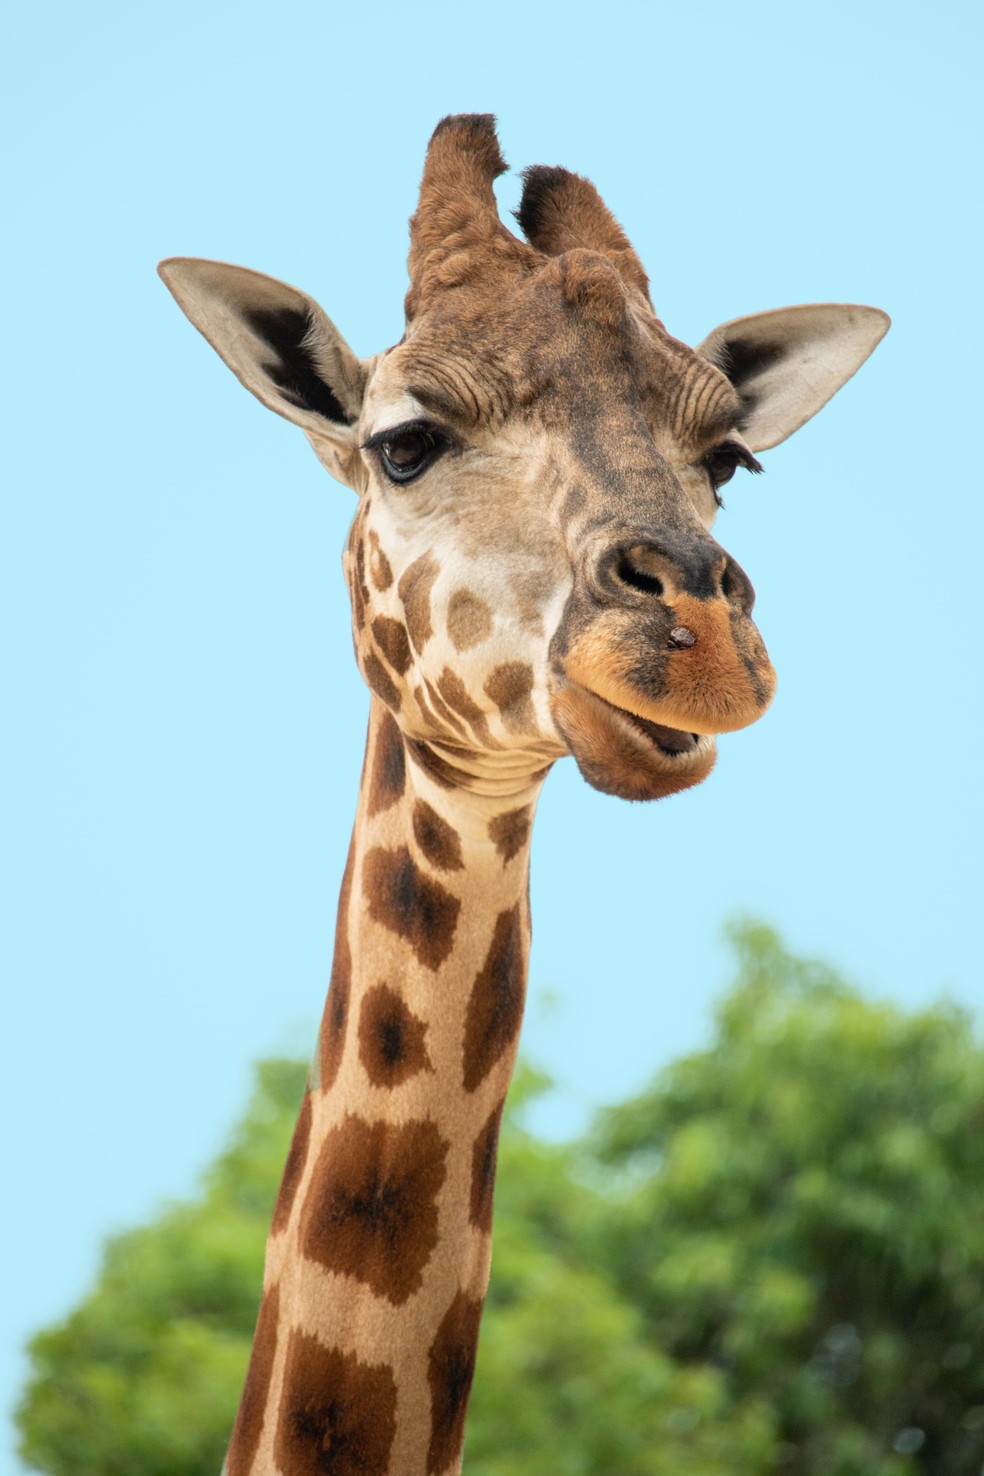 Algumas espécies inspecionam a urina das fêmeas, mas no solo. No caso das girafas, o pescoço comprido e a cabeça pesada fazem com que se inclinar leve à vulnerabilidade — Foto: Unsplash/ Sian Cooper/ Creative Commons